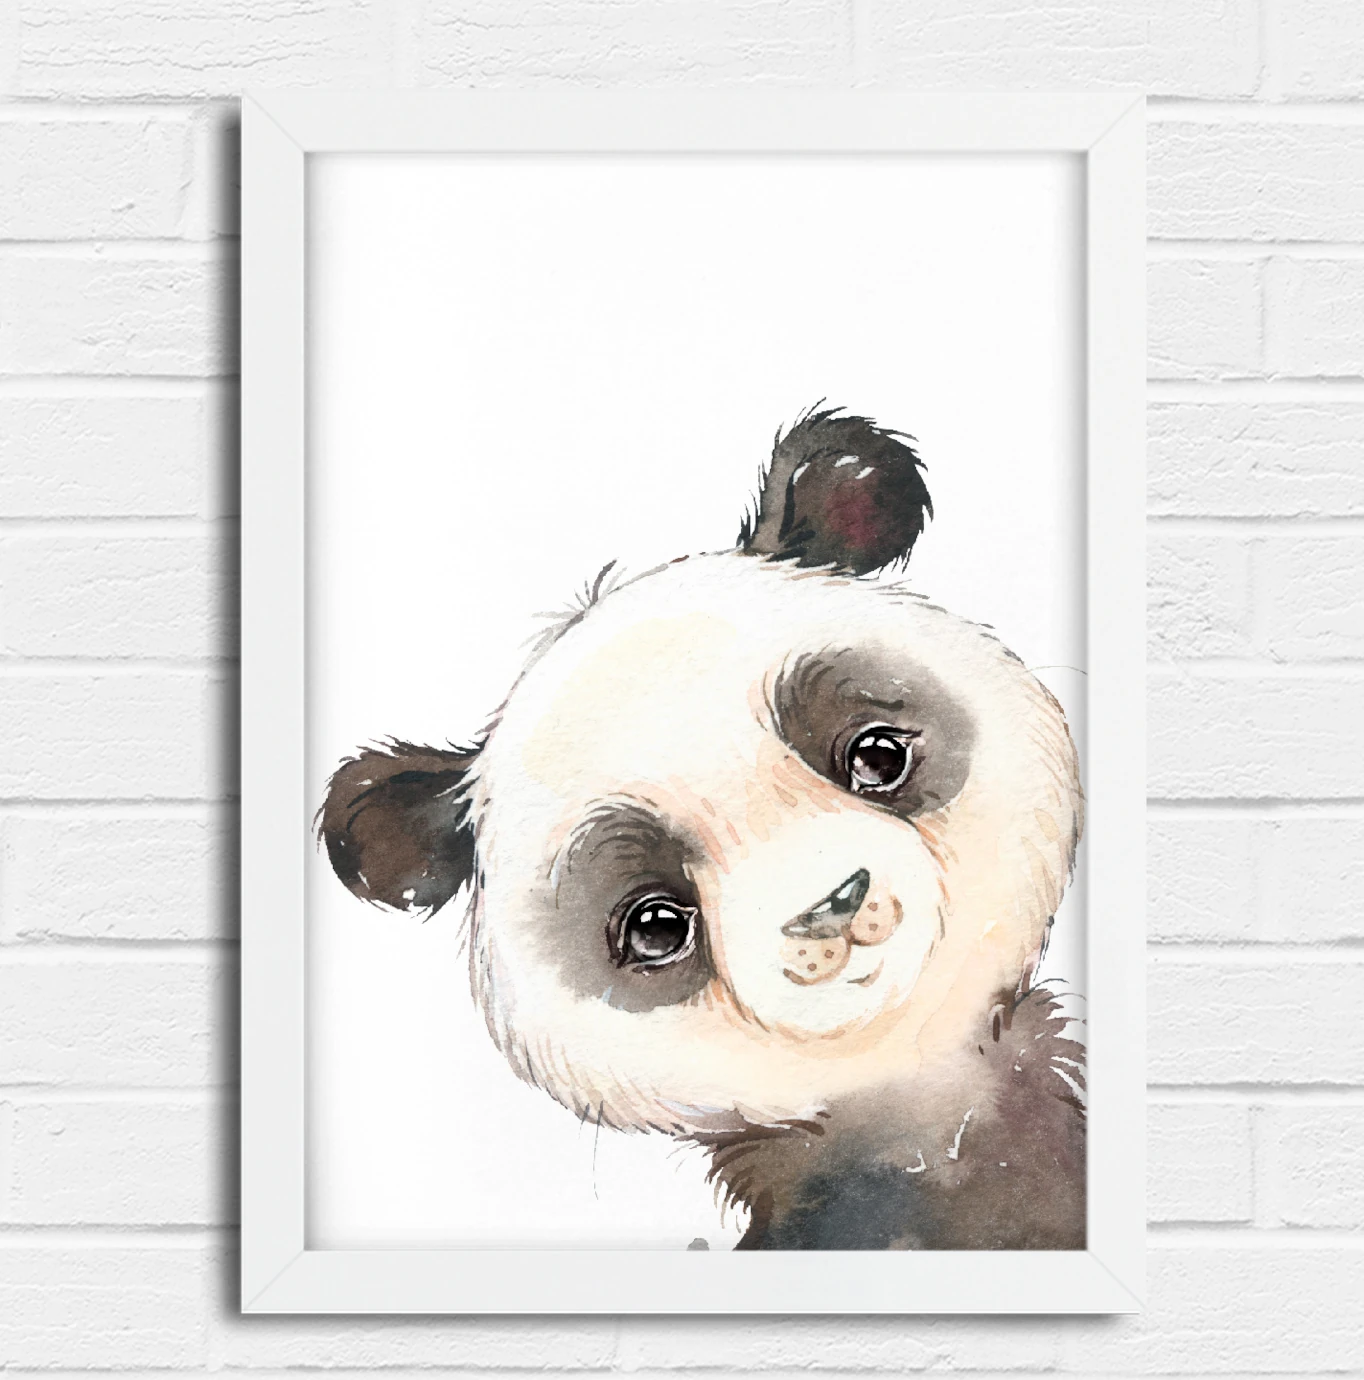 Desenho realista em aquarela de urso panda